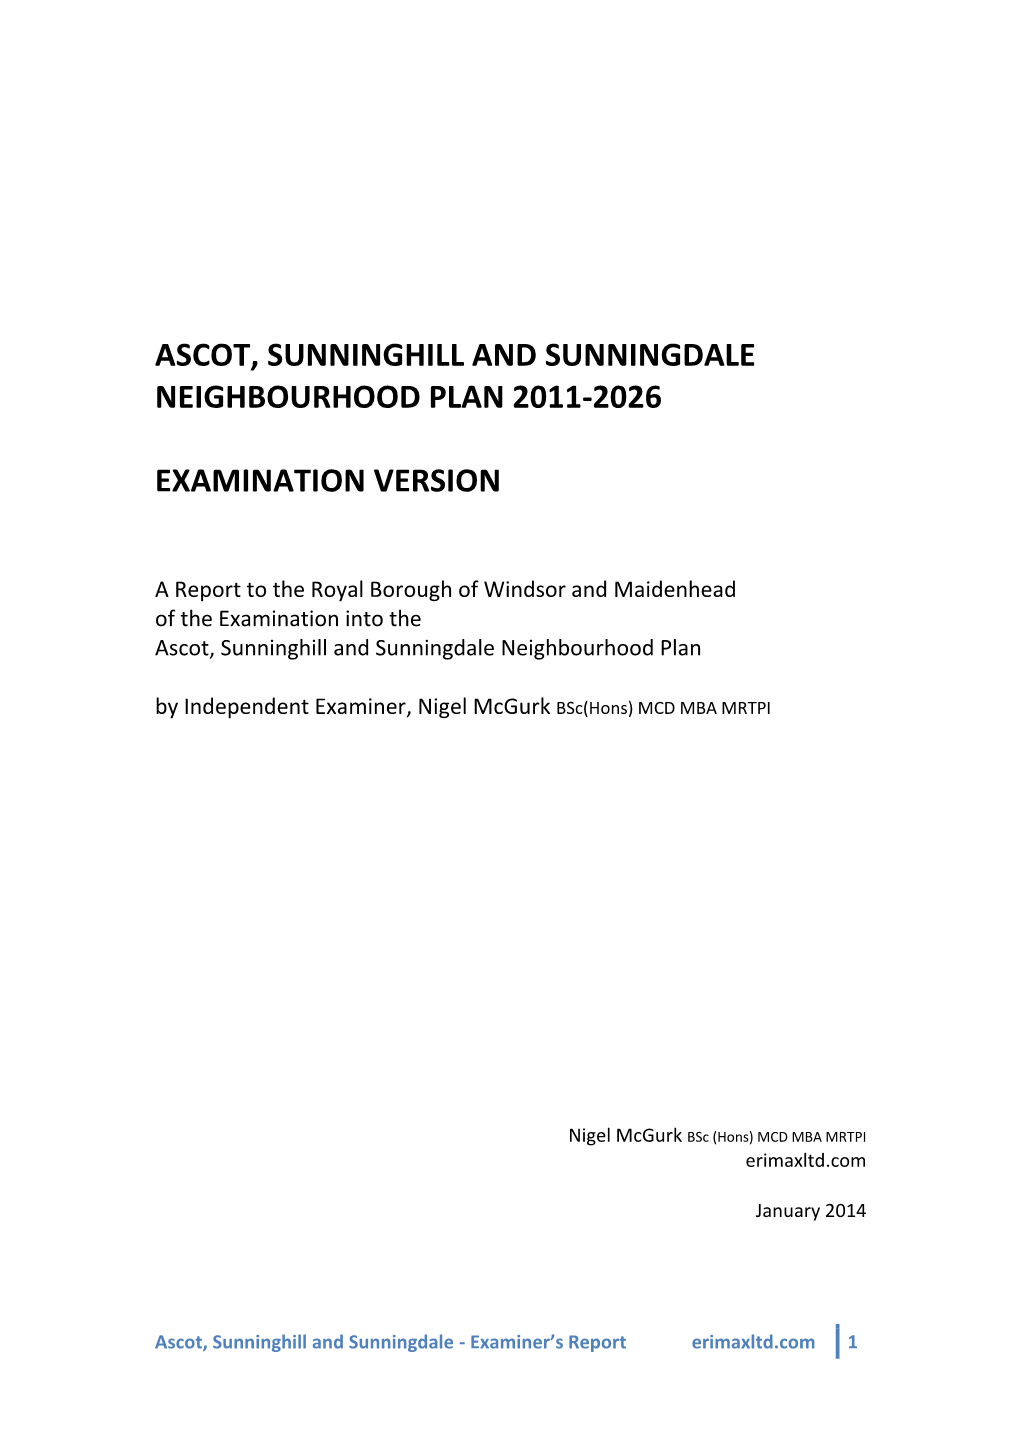 Ascot, Sunninghill and Sunningdale Neighbourhood Plan 2011-2026